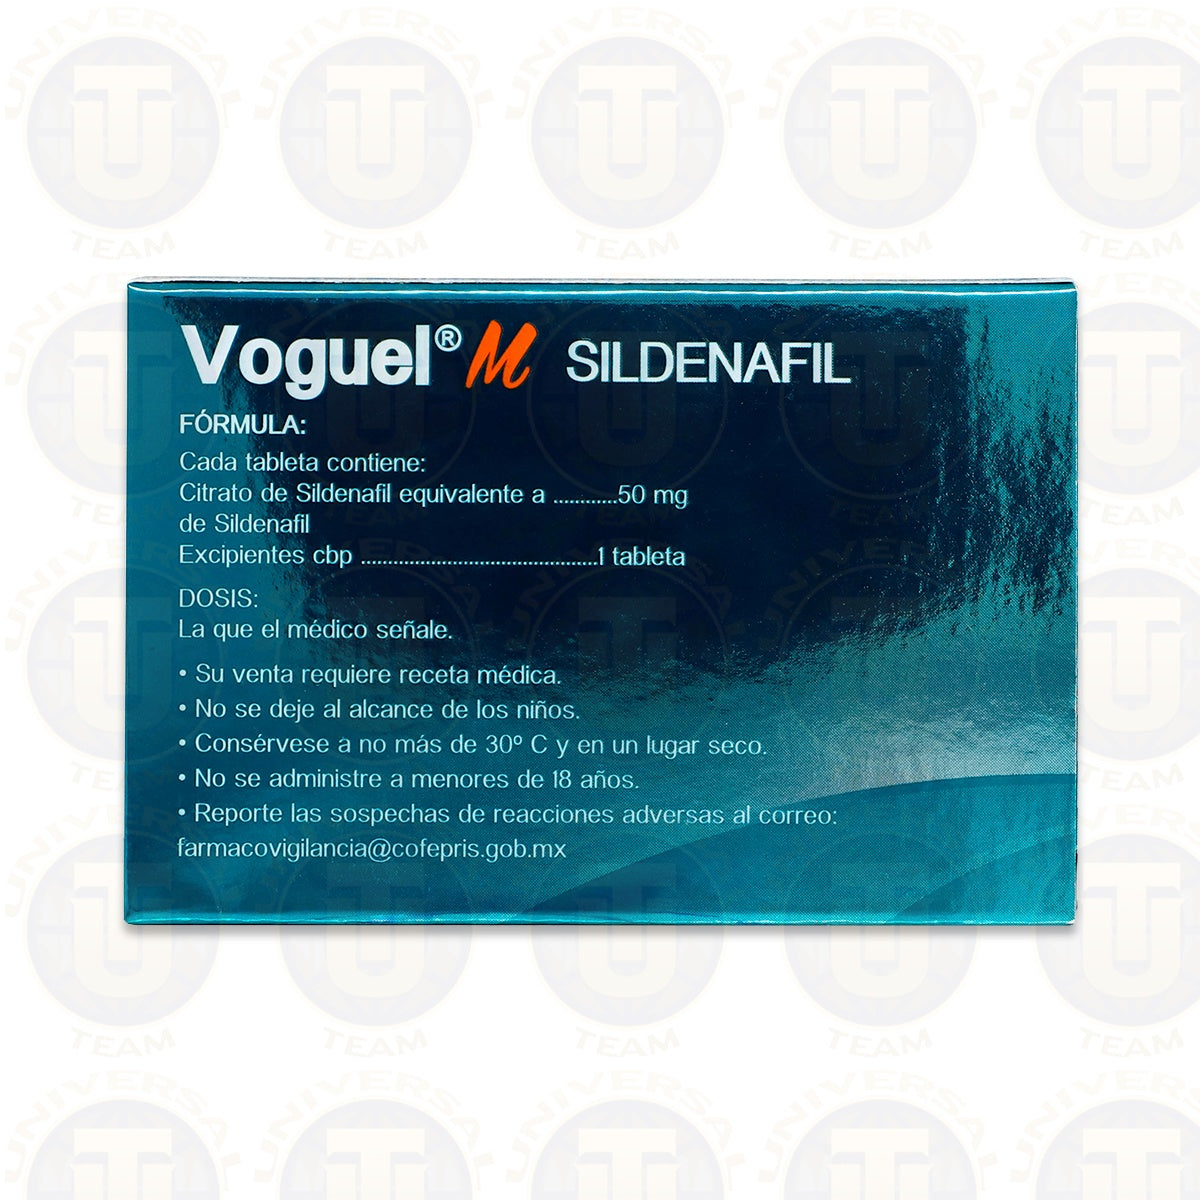 SILDENAFIL VOGUEL MASTICABLE, 1 TABLETA DE 50 MG, MAVER